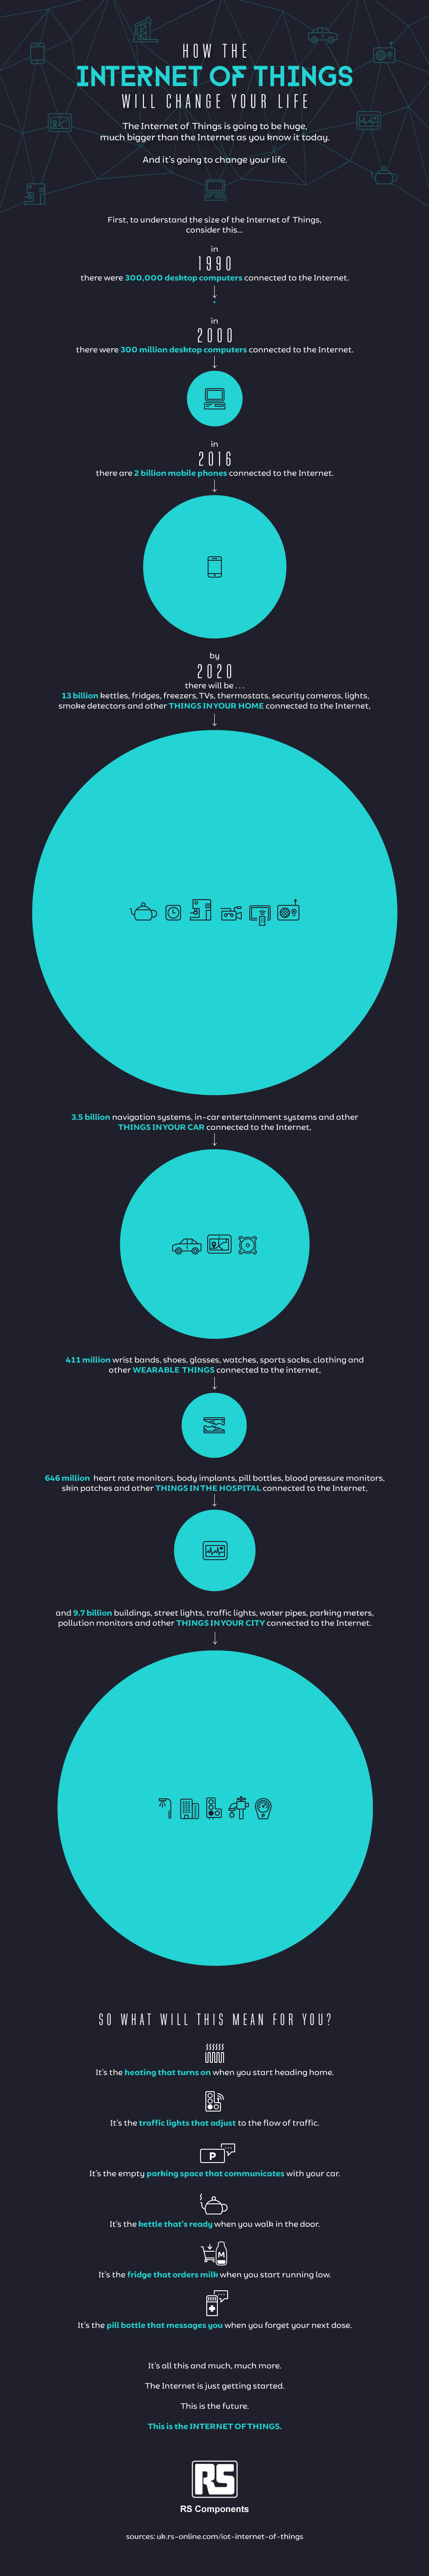 IoT infographic